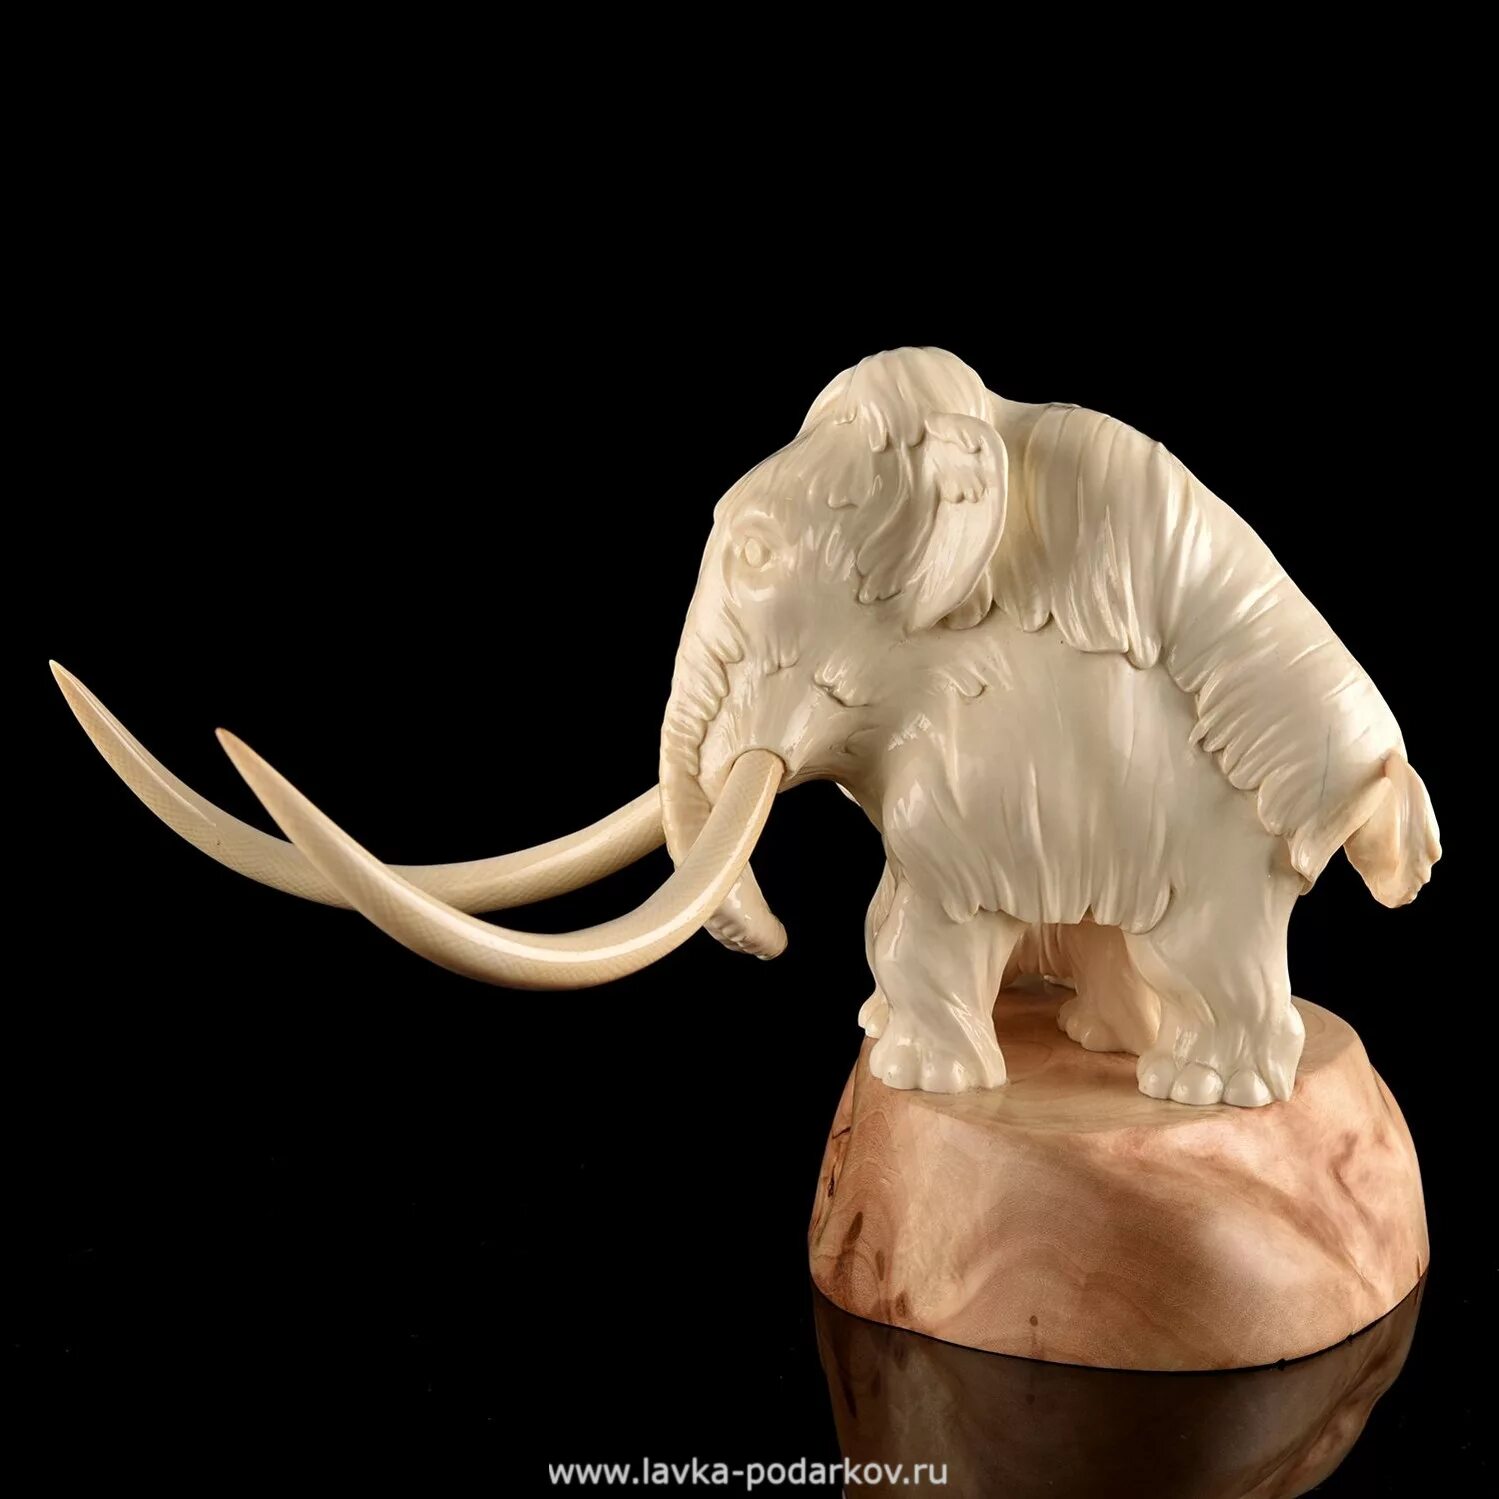 Мамонт из кости мамонта. Кости из кости мамонта. Изделия из слоновой кости и бивня мамонта. Скульптуры из бивня мамонта в Китае.